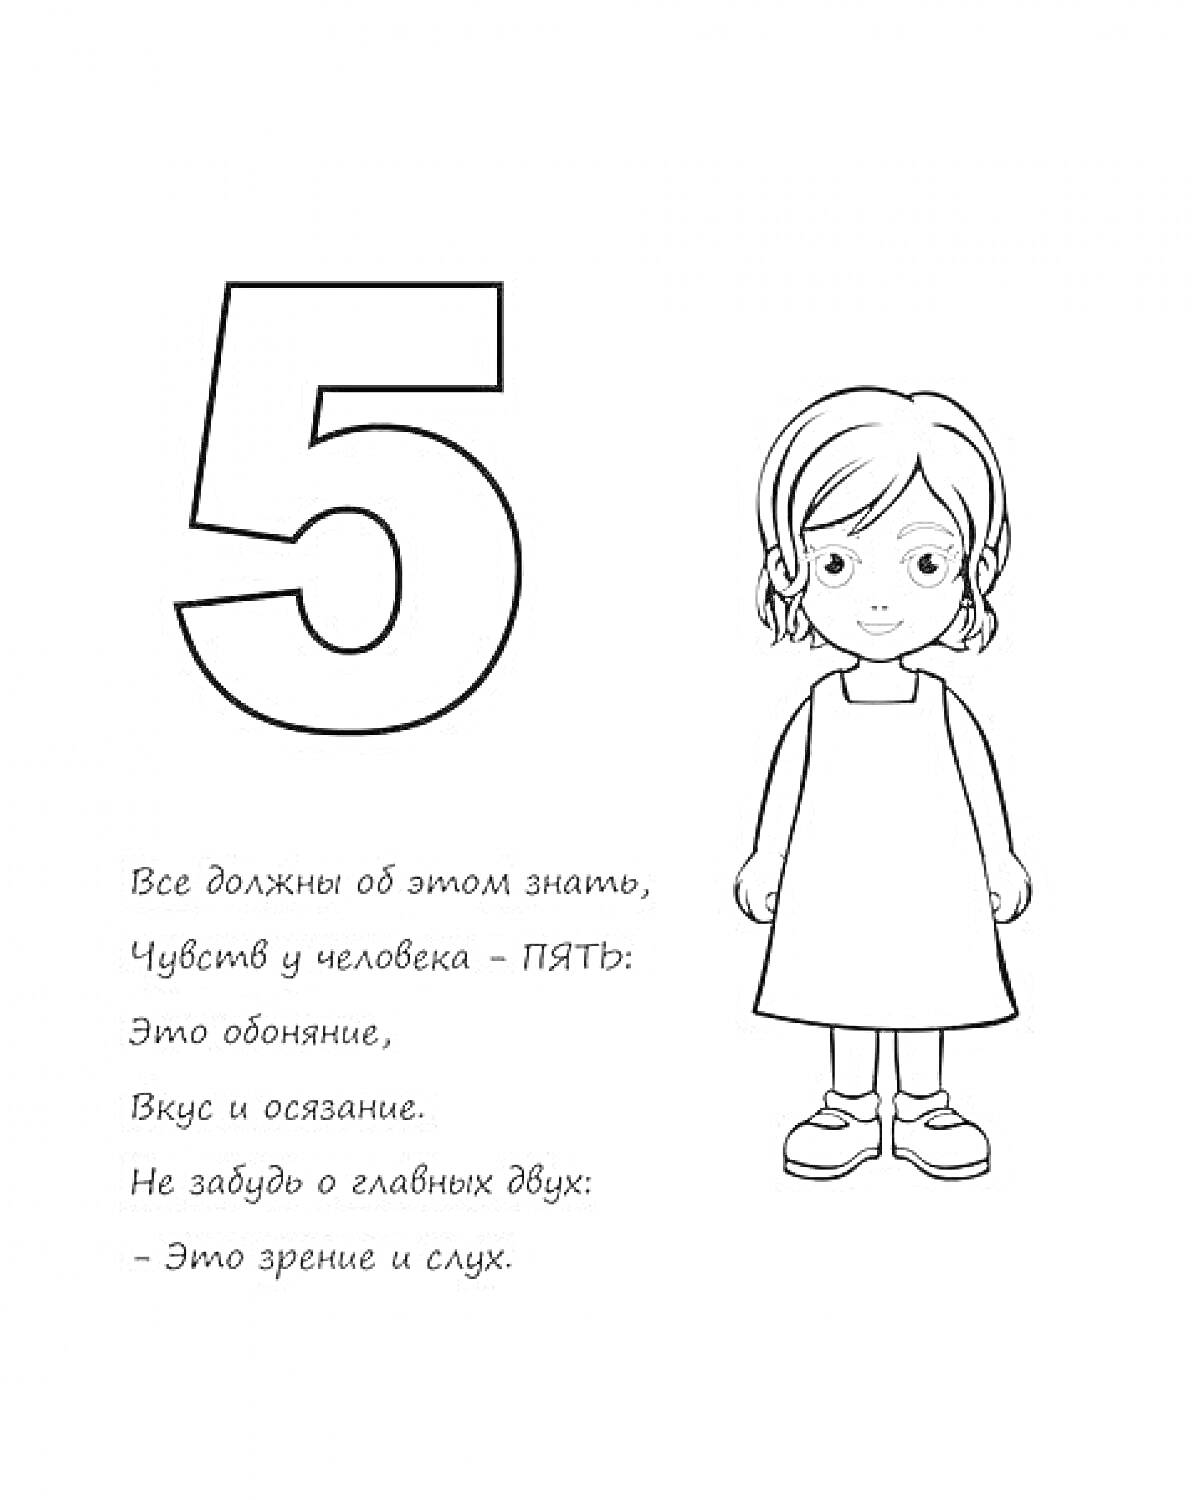 Раскраска Цифра 5 и маленькая девочка, стихотворение о пяти чувствах